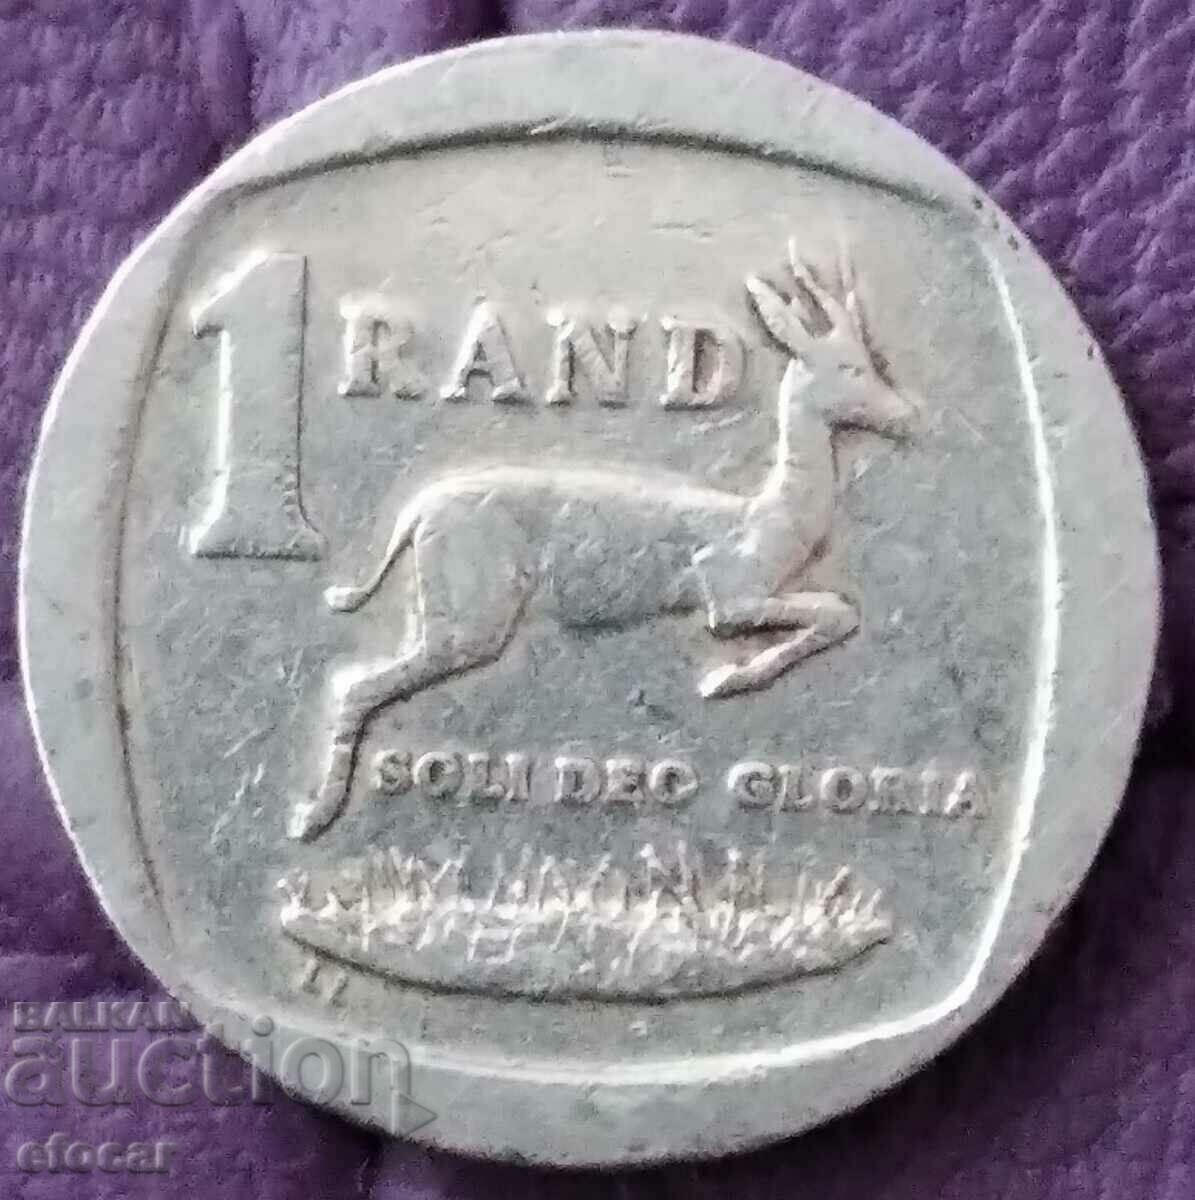 1 Rand Africa de Sud 2004